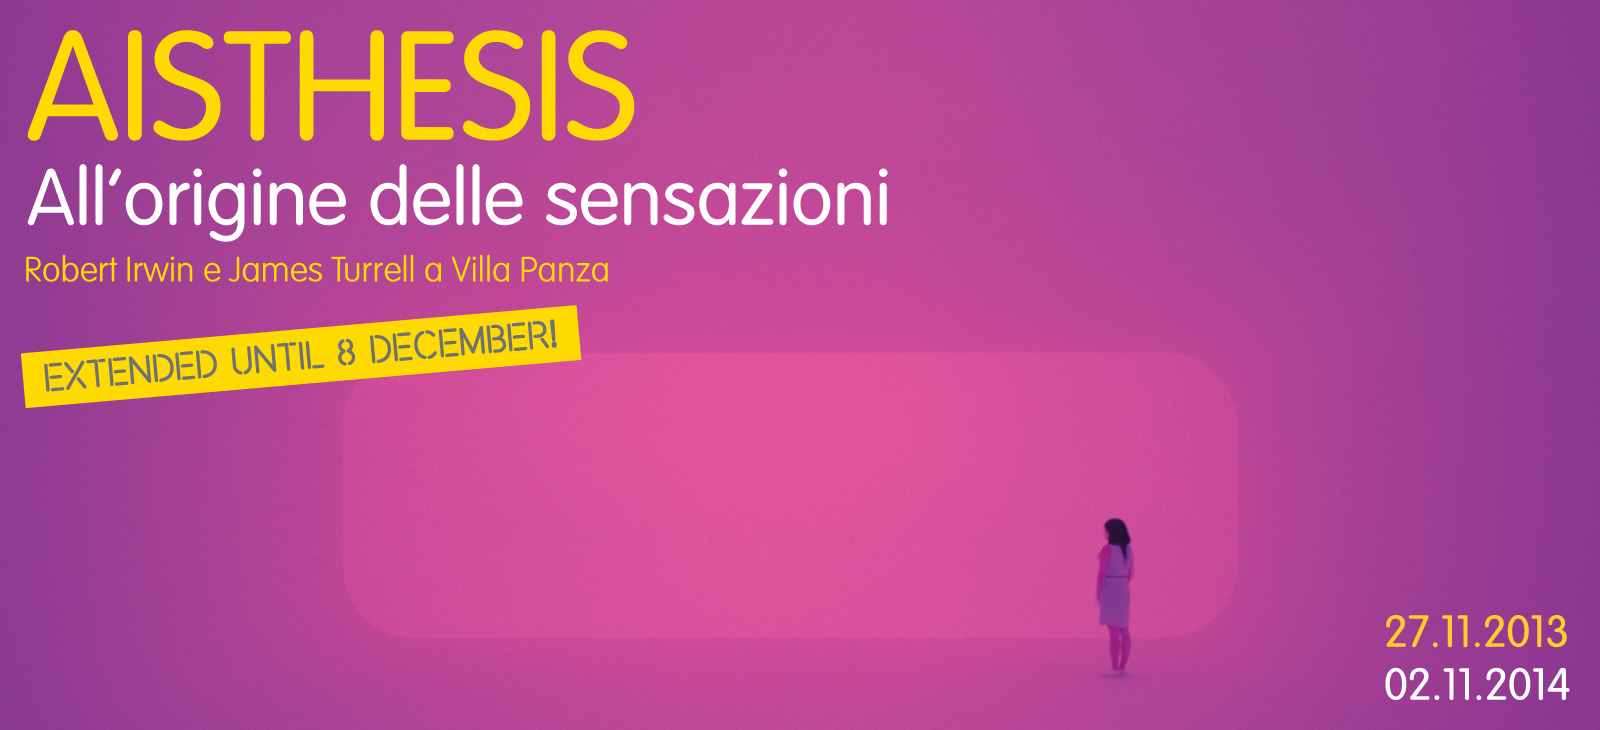 James Turrell All'origine delle sensazioni - 27.11.2012-02.11.2014